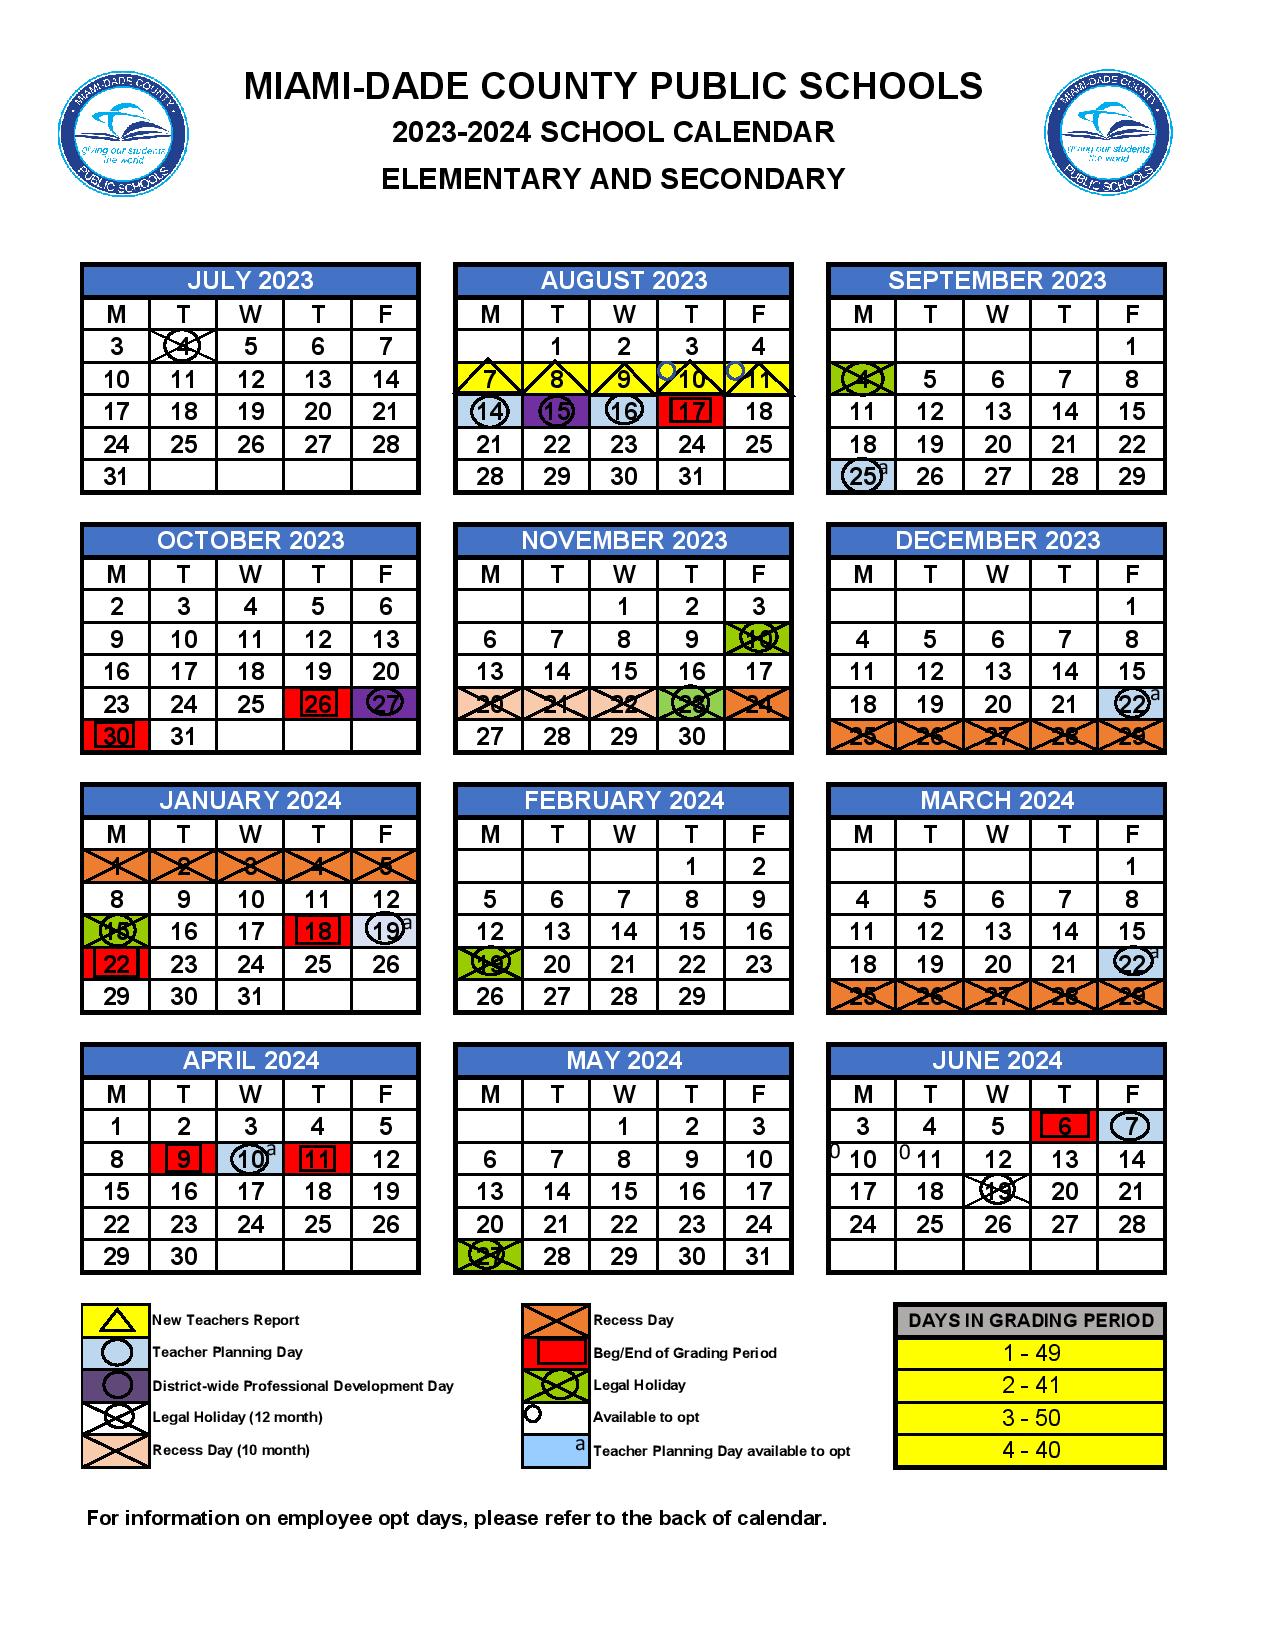 MiamiDade County Public Schools Calendar 2024